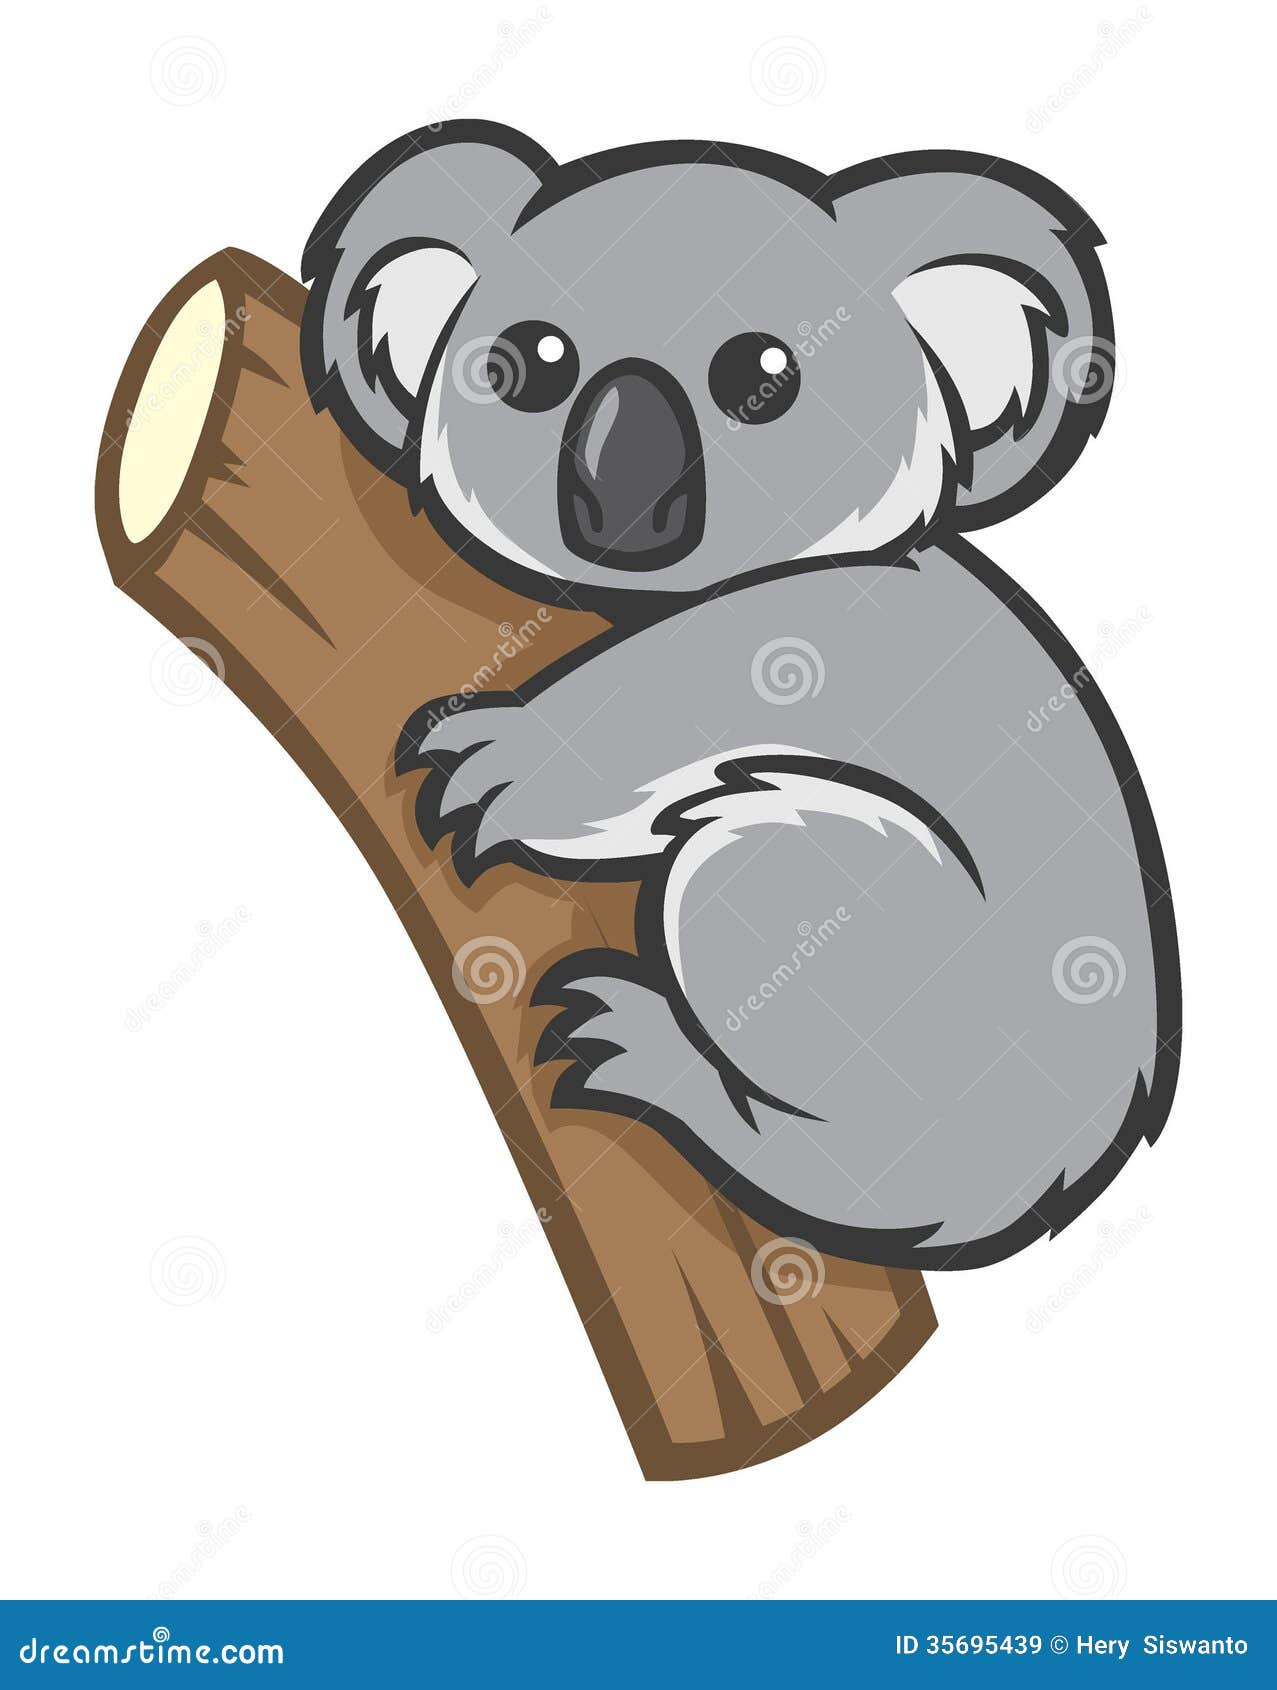 cute koala clipart - photo #46